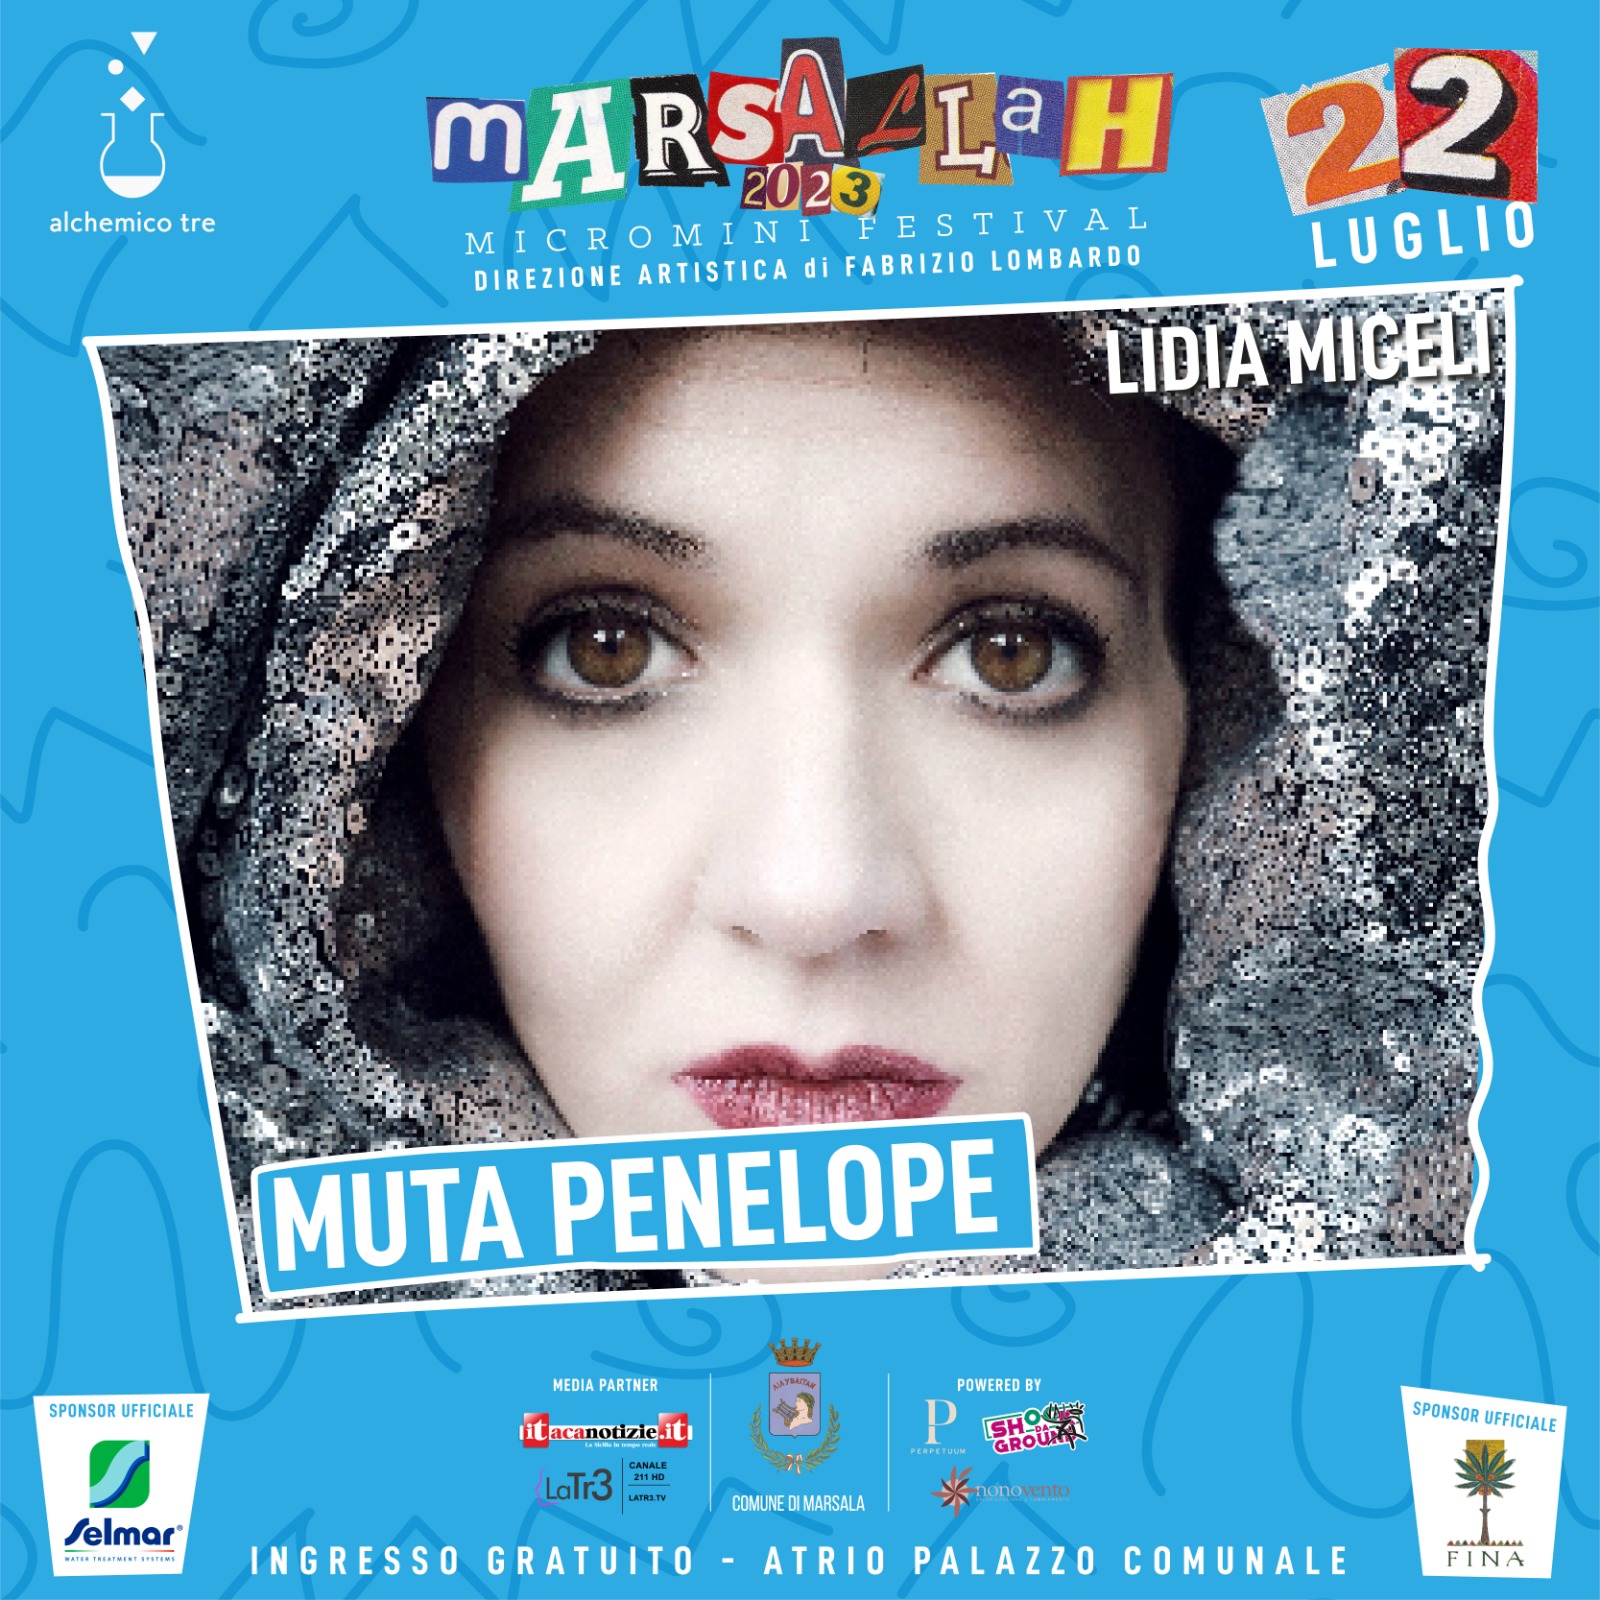 Al Marsallah Micromini Festival Lidia Miceli è Penelope